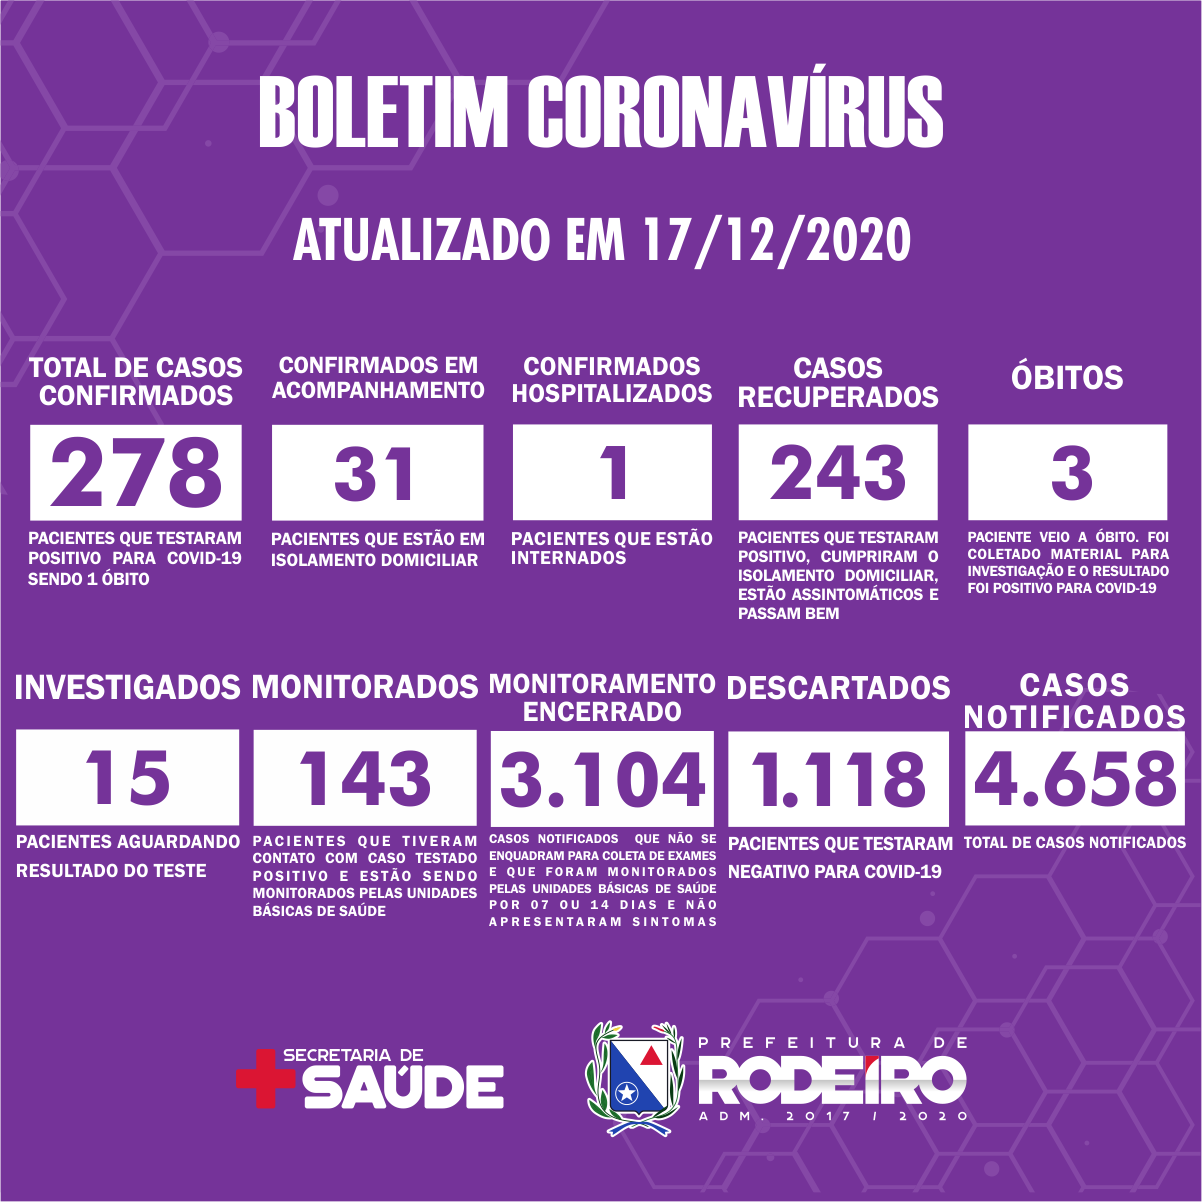 Boletim Epidemiológico do Município de Rodeiro sobre coronavírus, atualizado em 17/12/2020